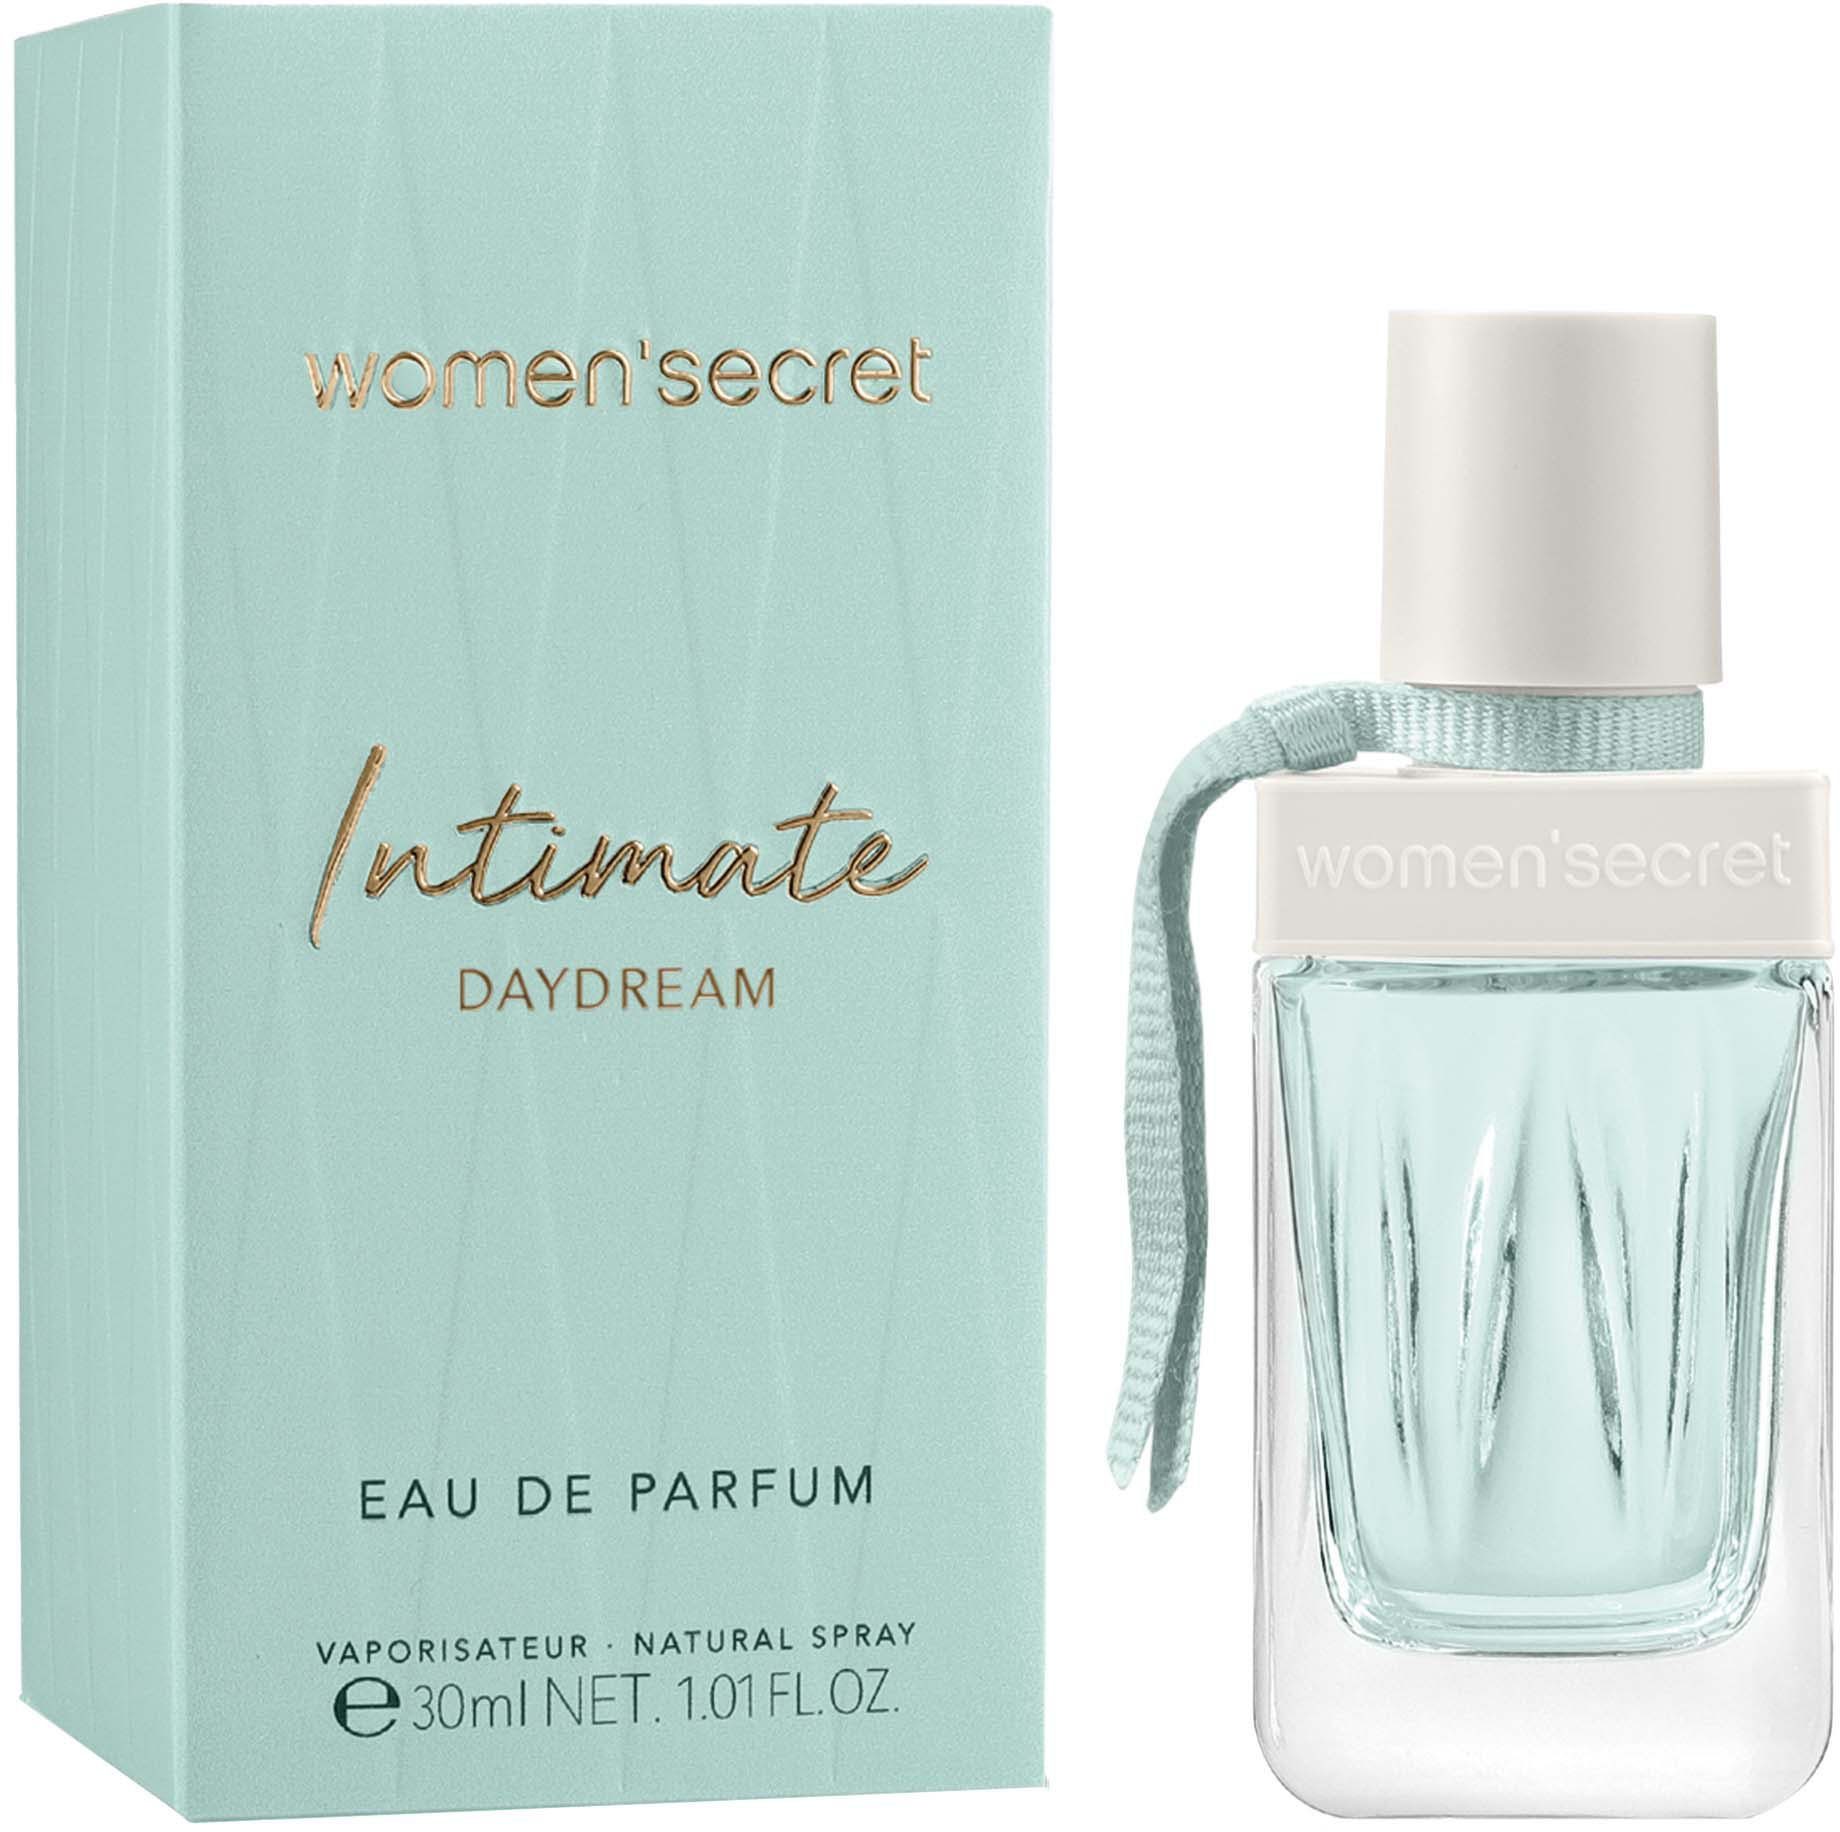 INTIMATE DAYDREAM Eau women'secret de Parfum Eau Parfum de